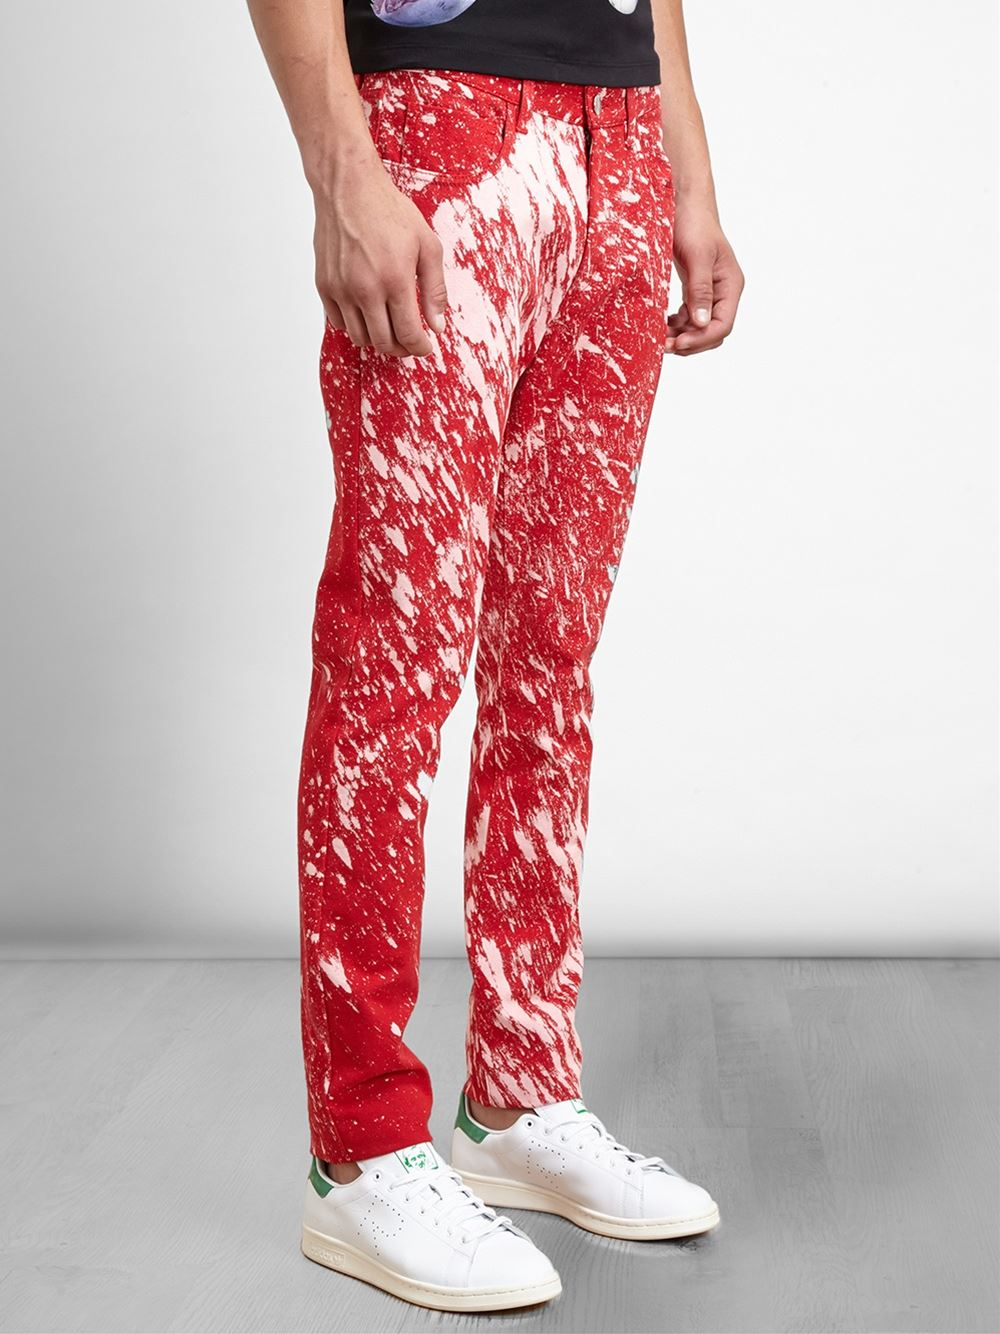 Raf Simons Sterling Ruby Paint Splatter Skinny Jeans in Red for Men - Lyst